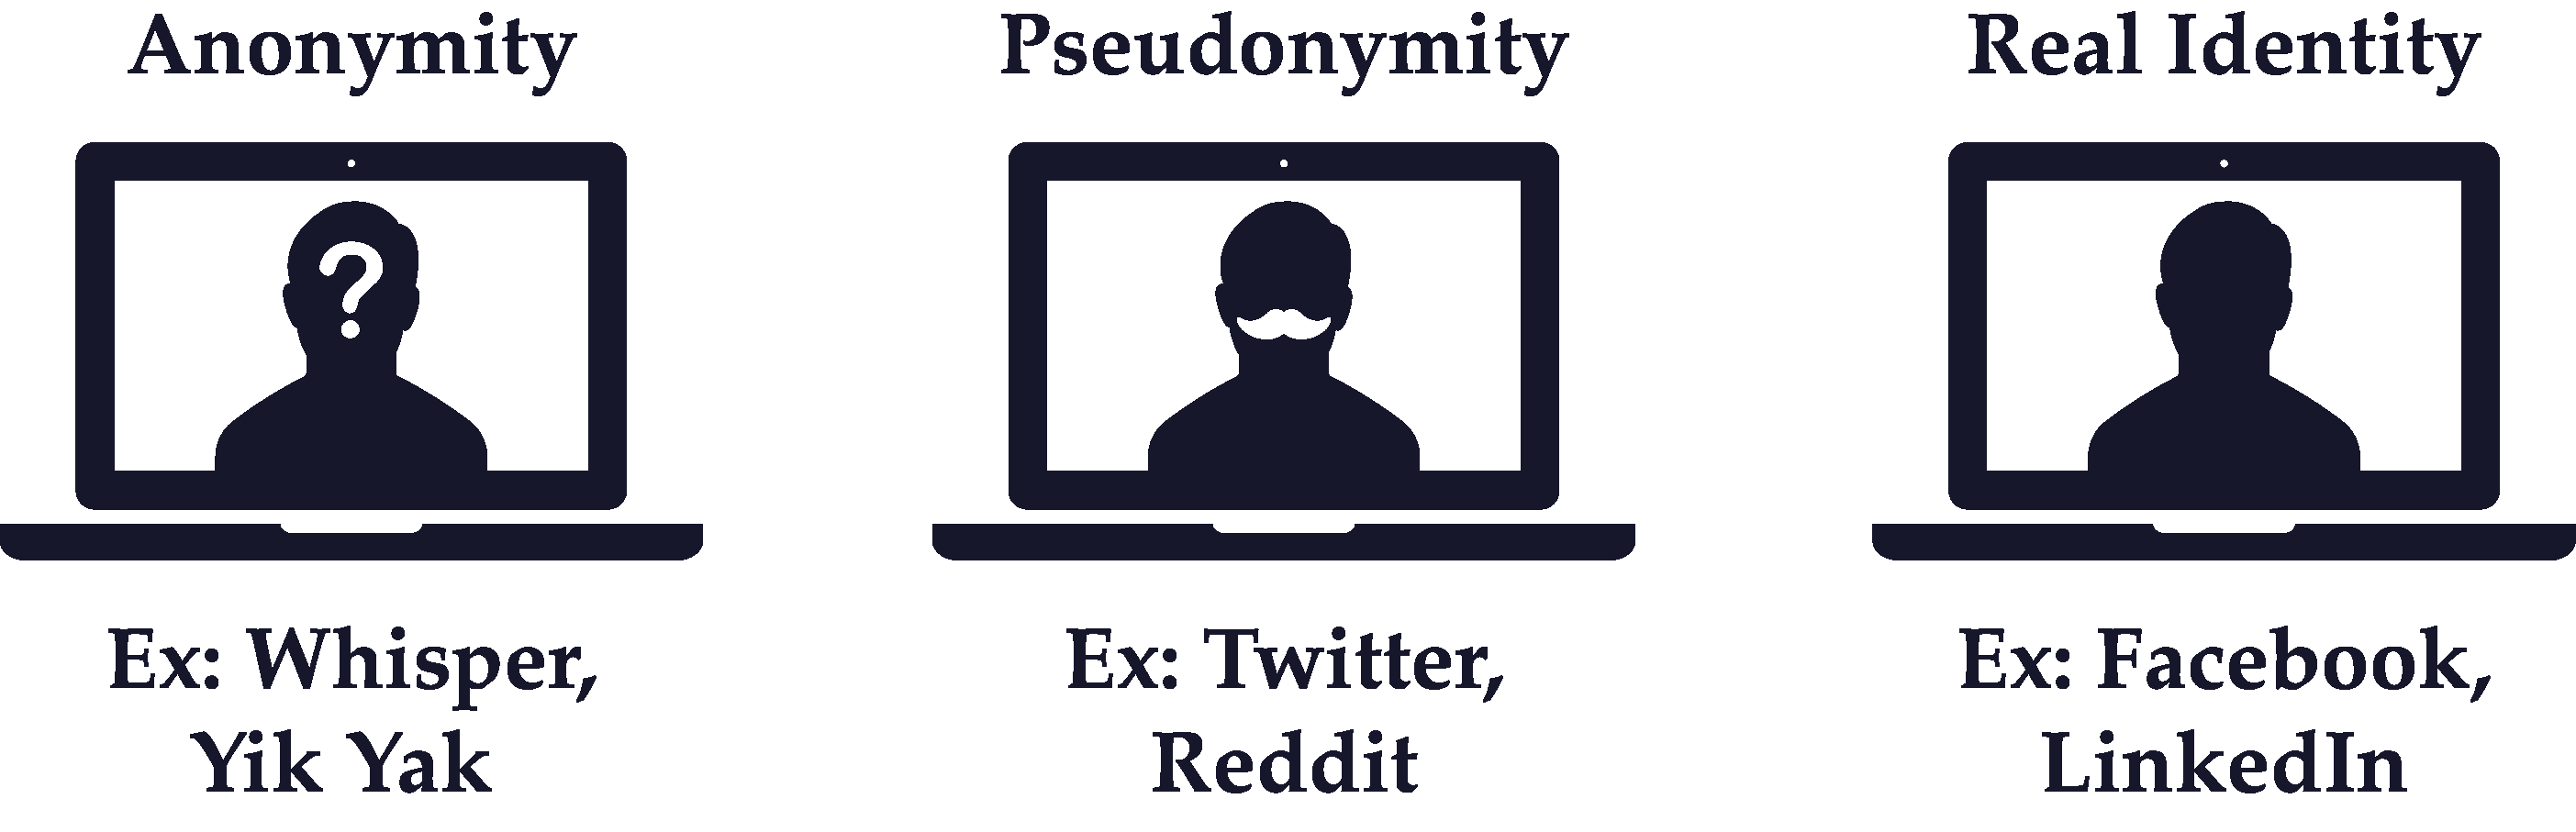 Real Identity vs Pseudonymity vs Anonymity